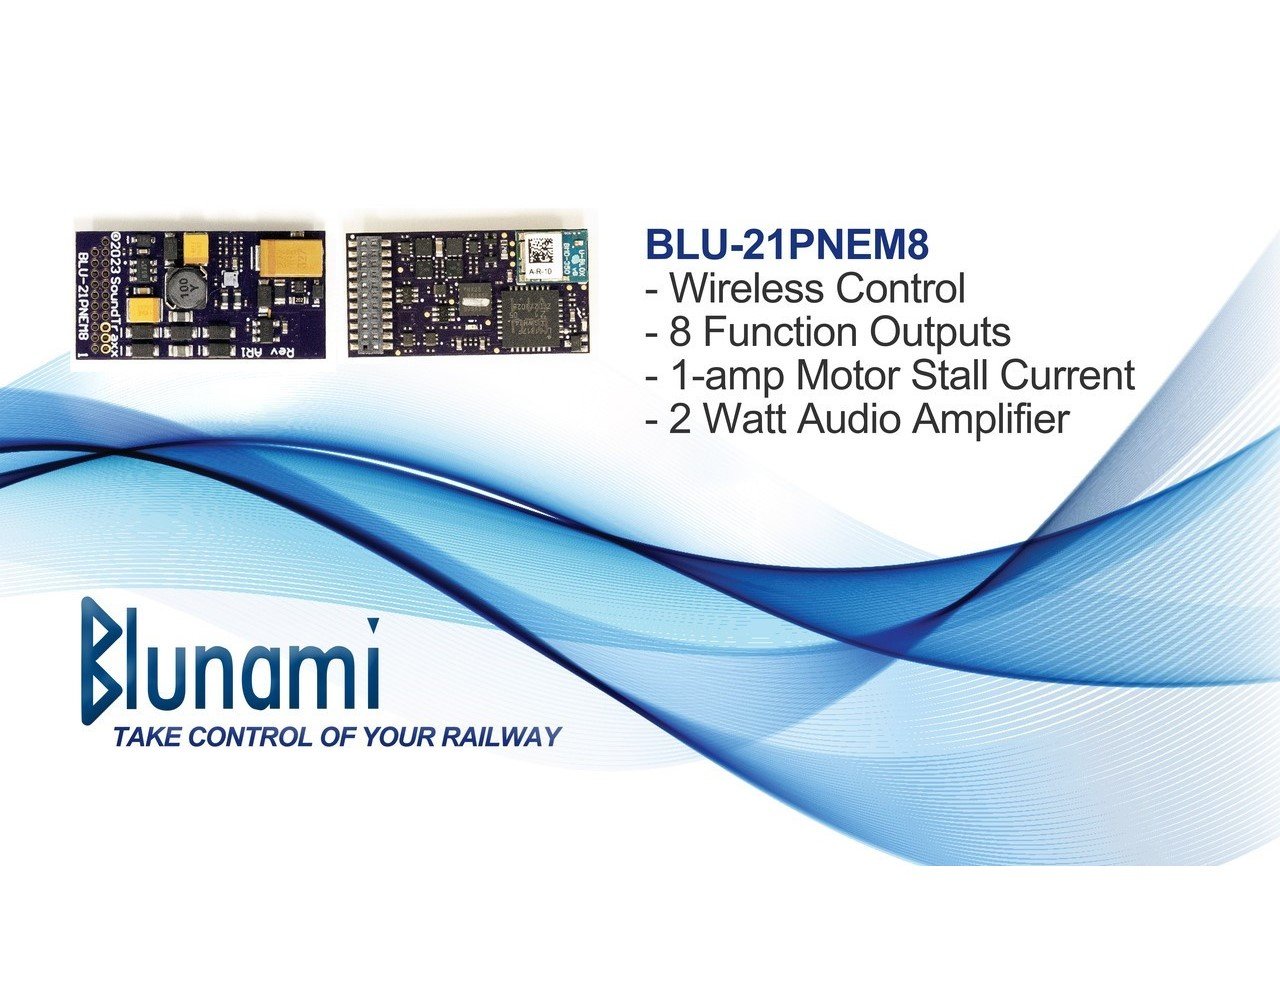 SoundTraxx Blunami BLU-21PNEM8 886603 Electric Wireless DCC/SOUND Decoder